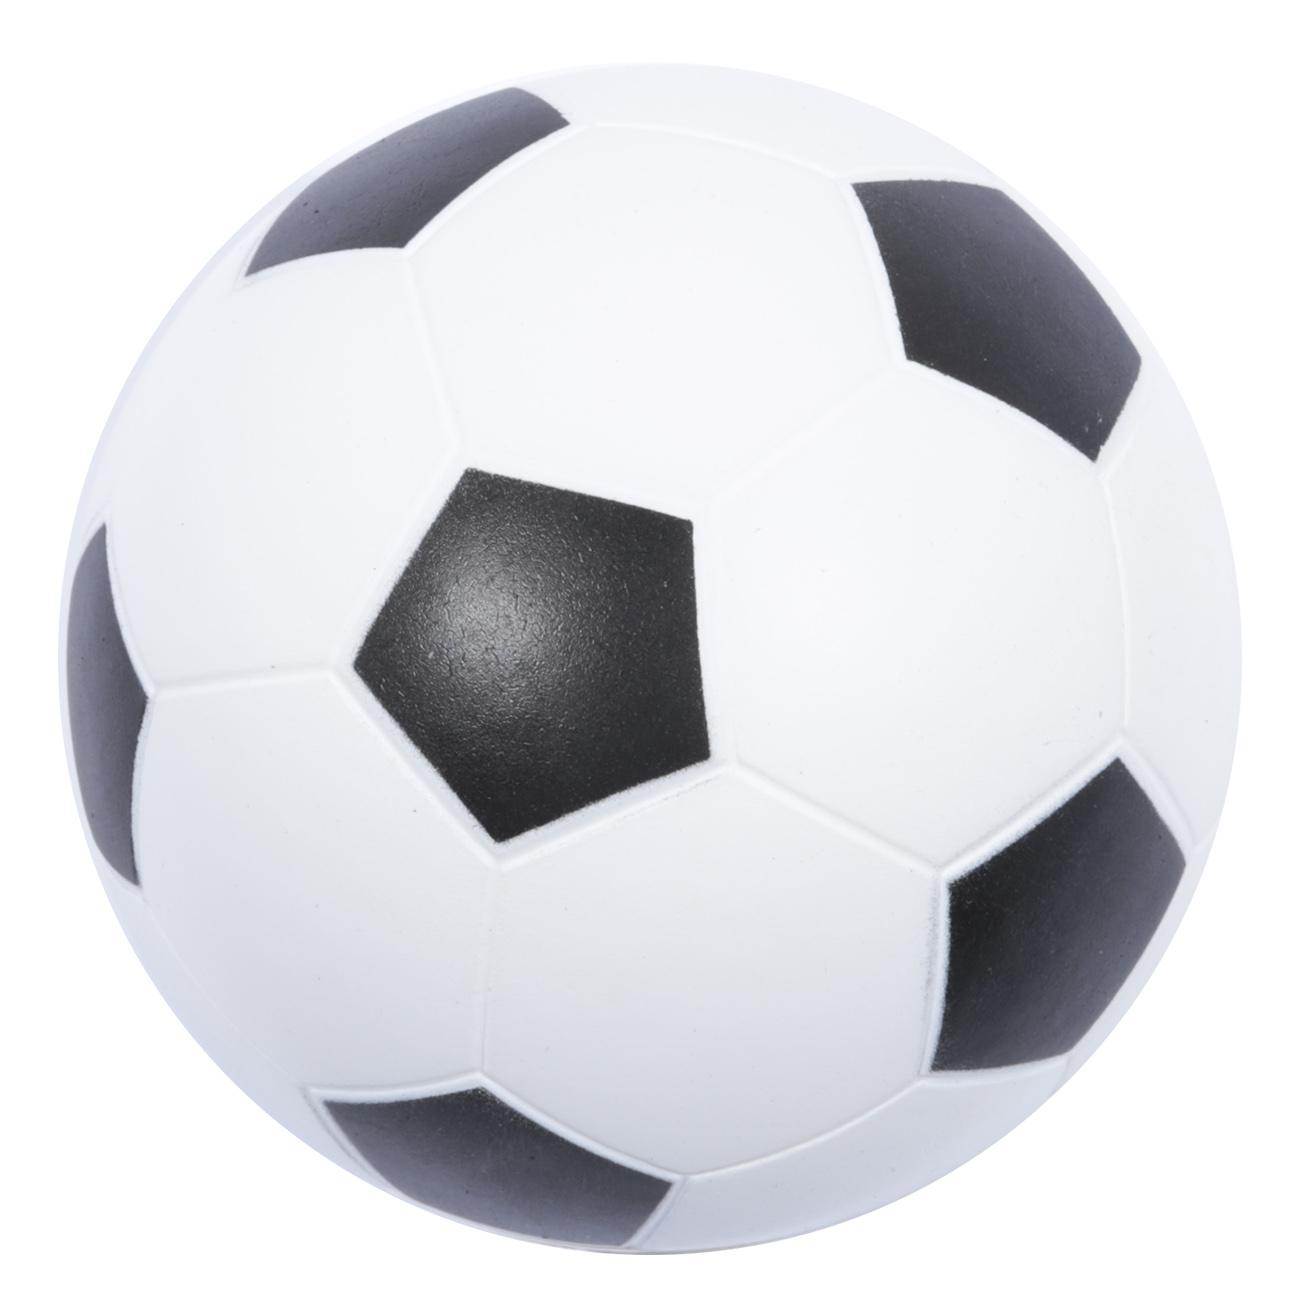 Мяч, 13 см, полиуретан, бело-черный, Футбол, Game